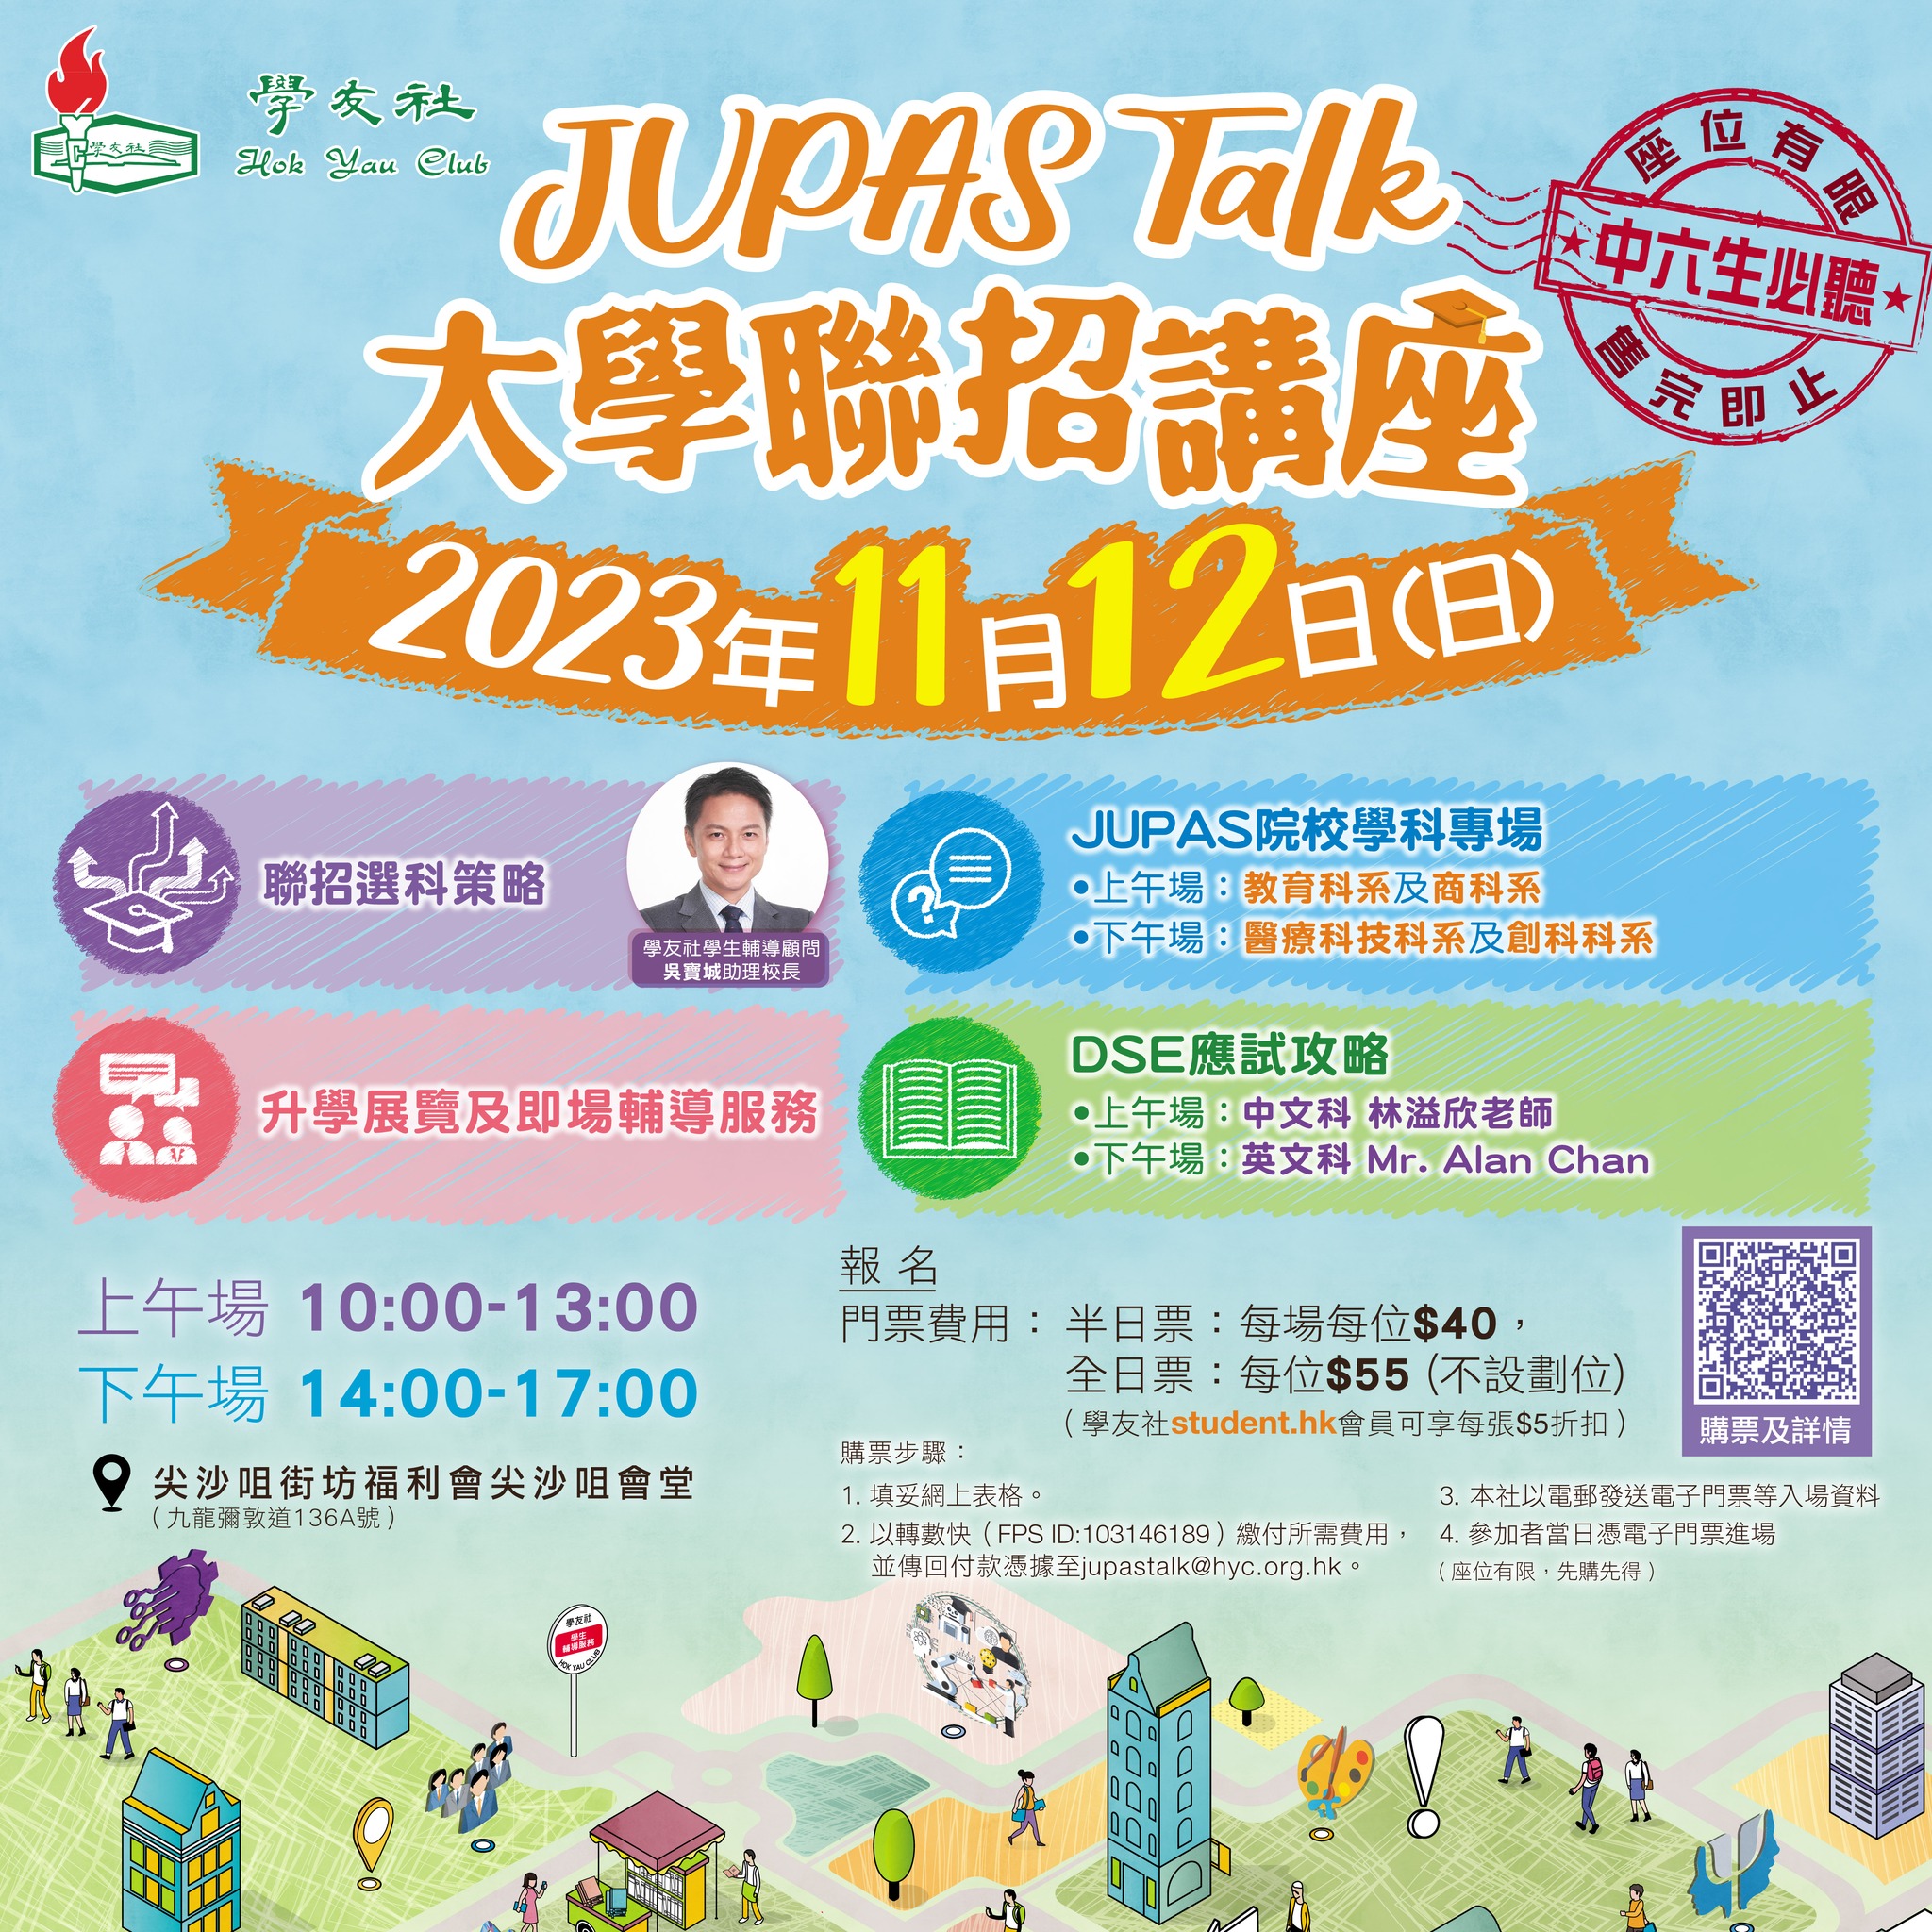 學友社大學聯招講座 JUPAS Talk 2023